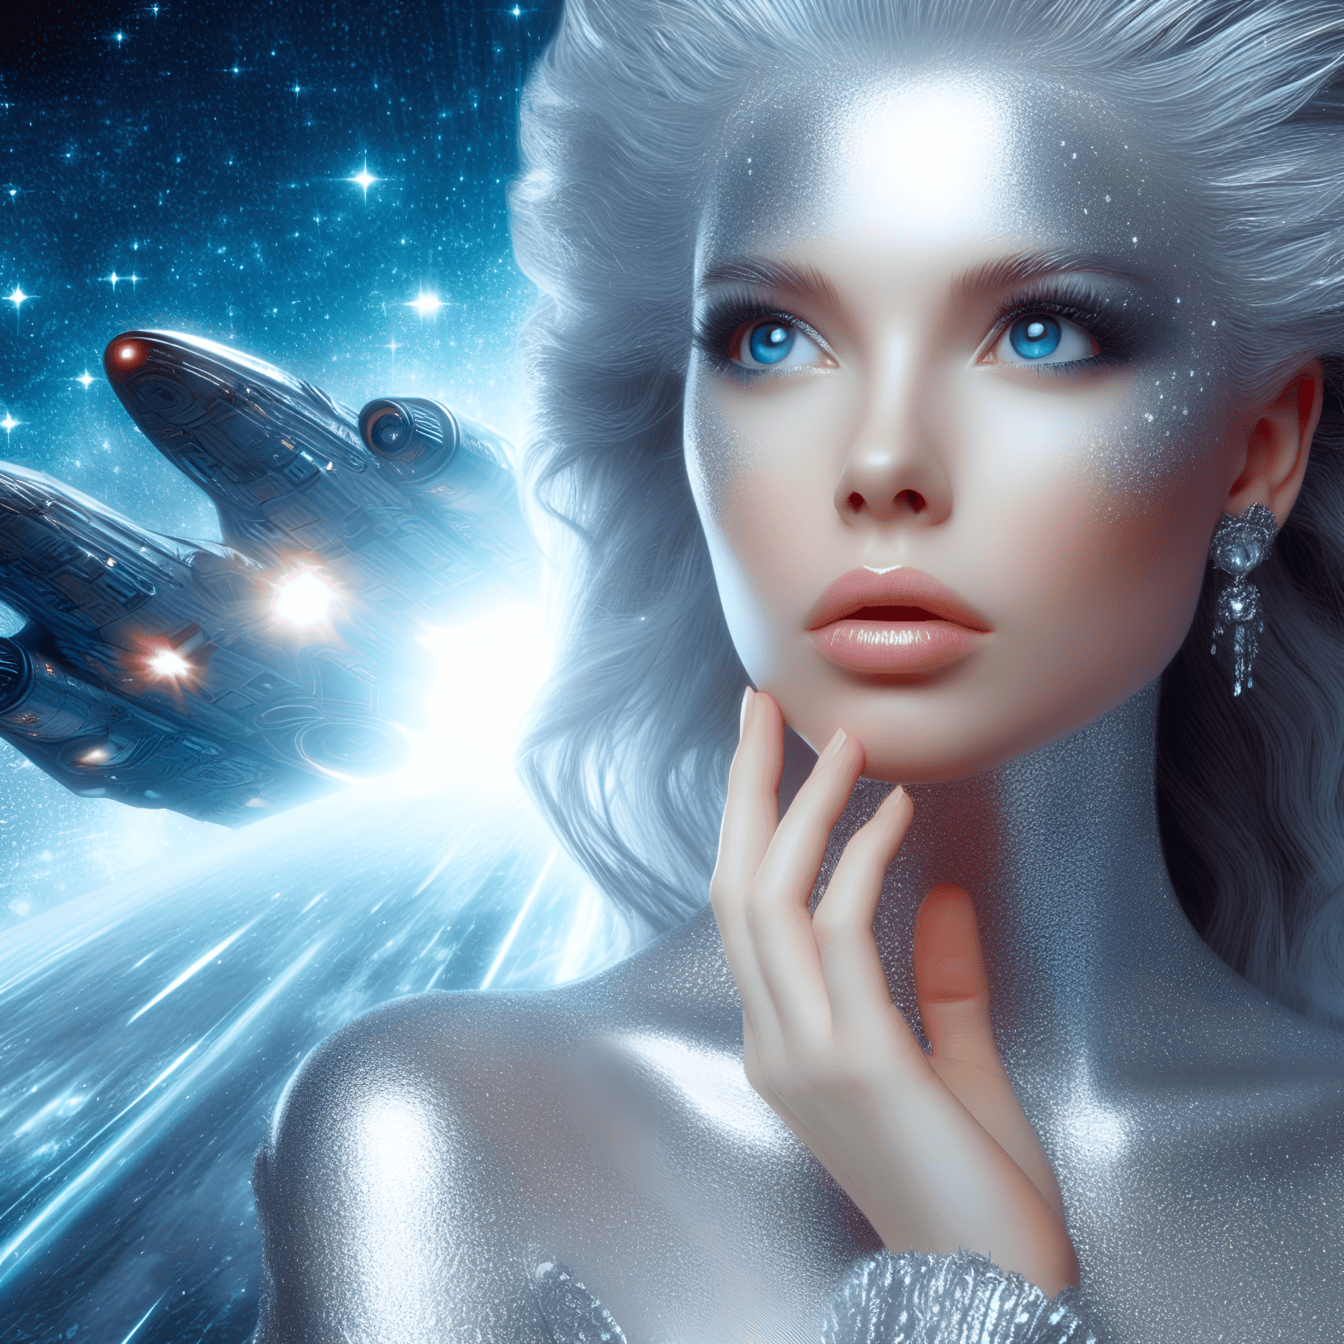 Portret božice izvanzemaljskog višeg bića sa svemirskim brodom u pozadini